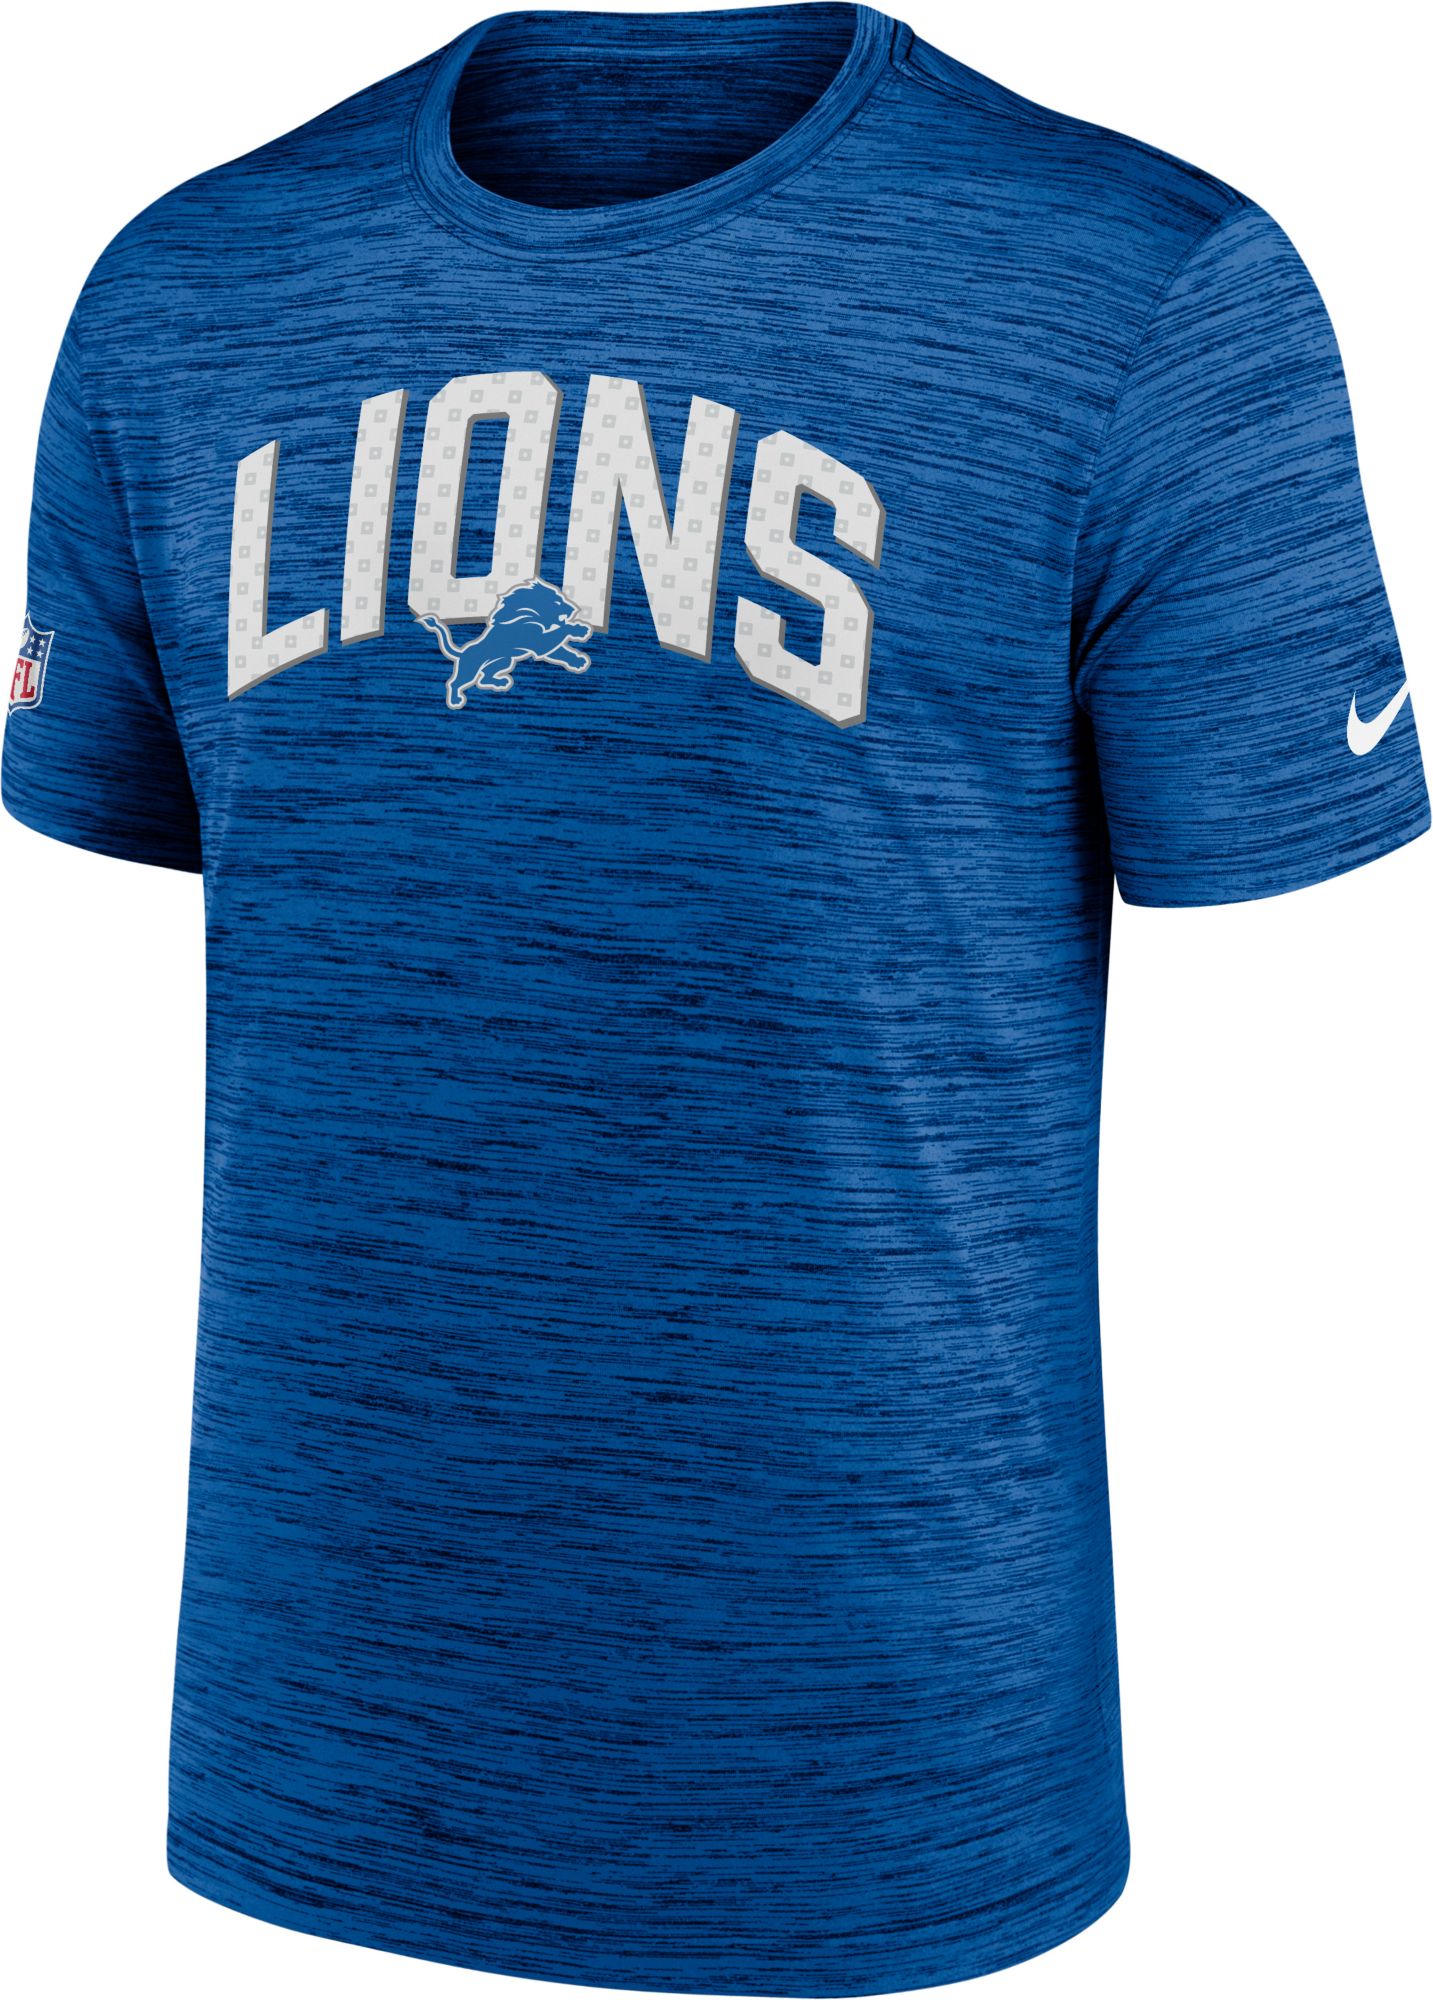 men's detroit lions t shirt